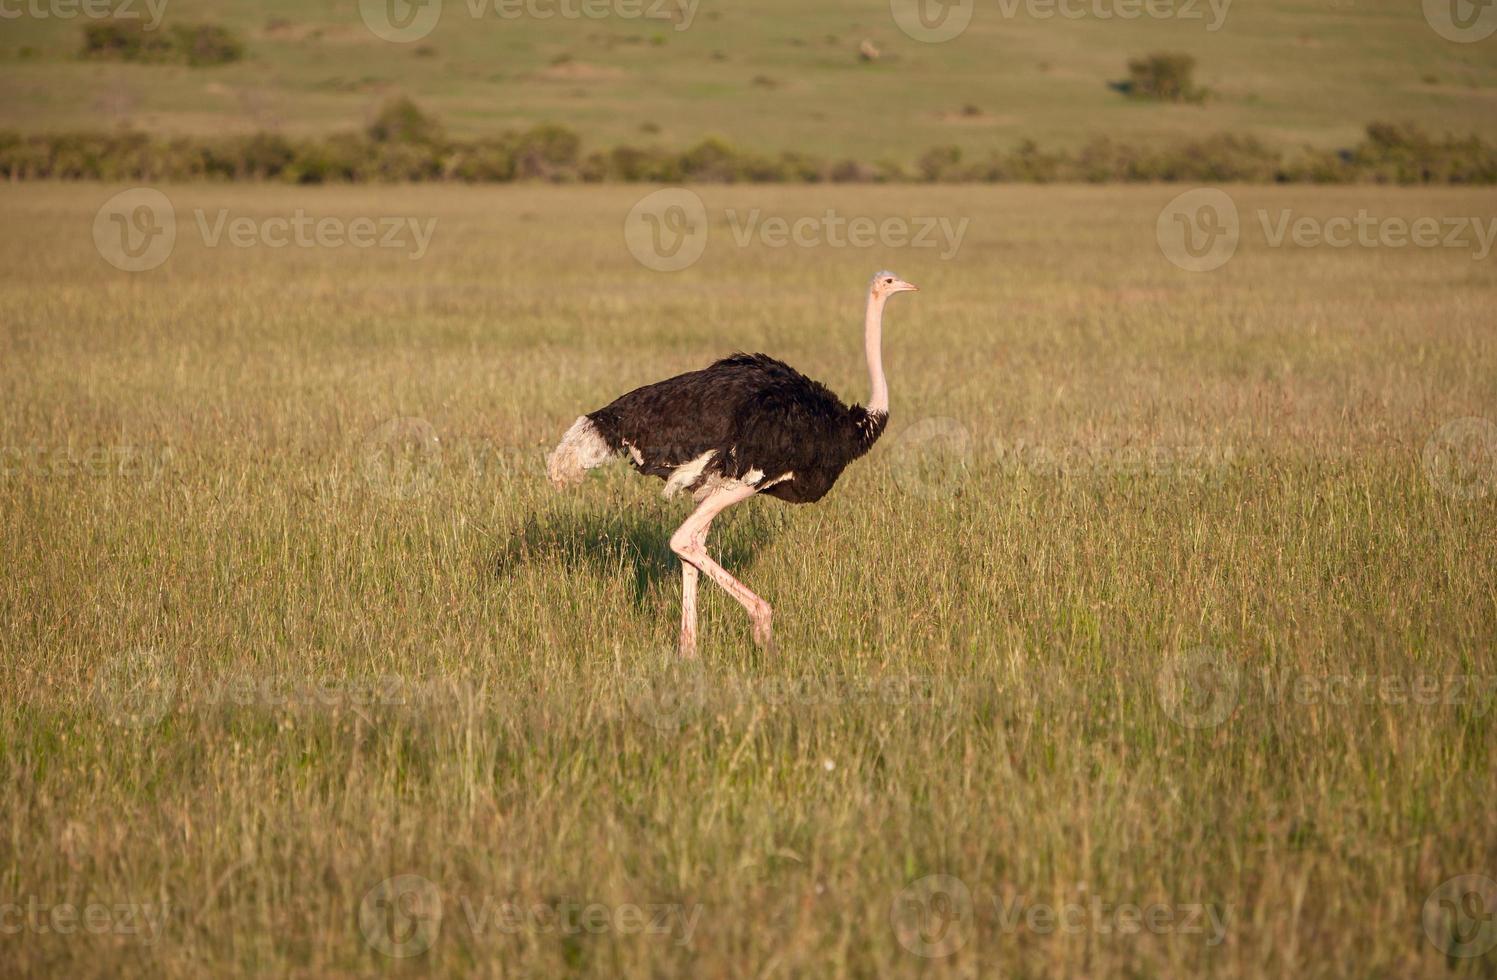 struisvogel die op savanne in Afrika loopt. safari. Kenia foto